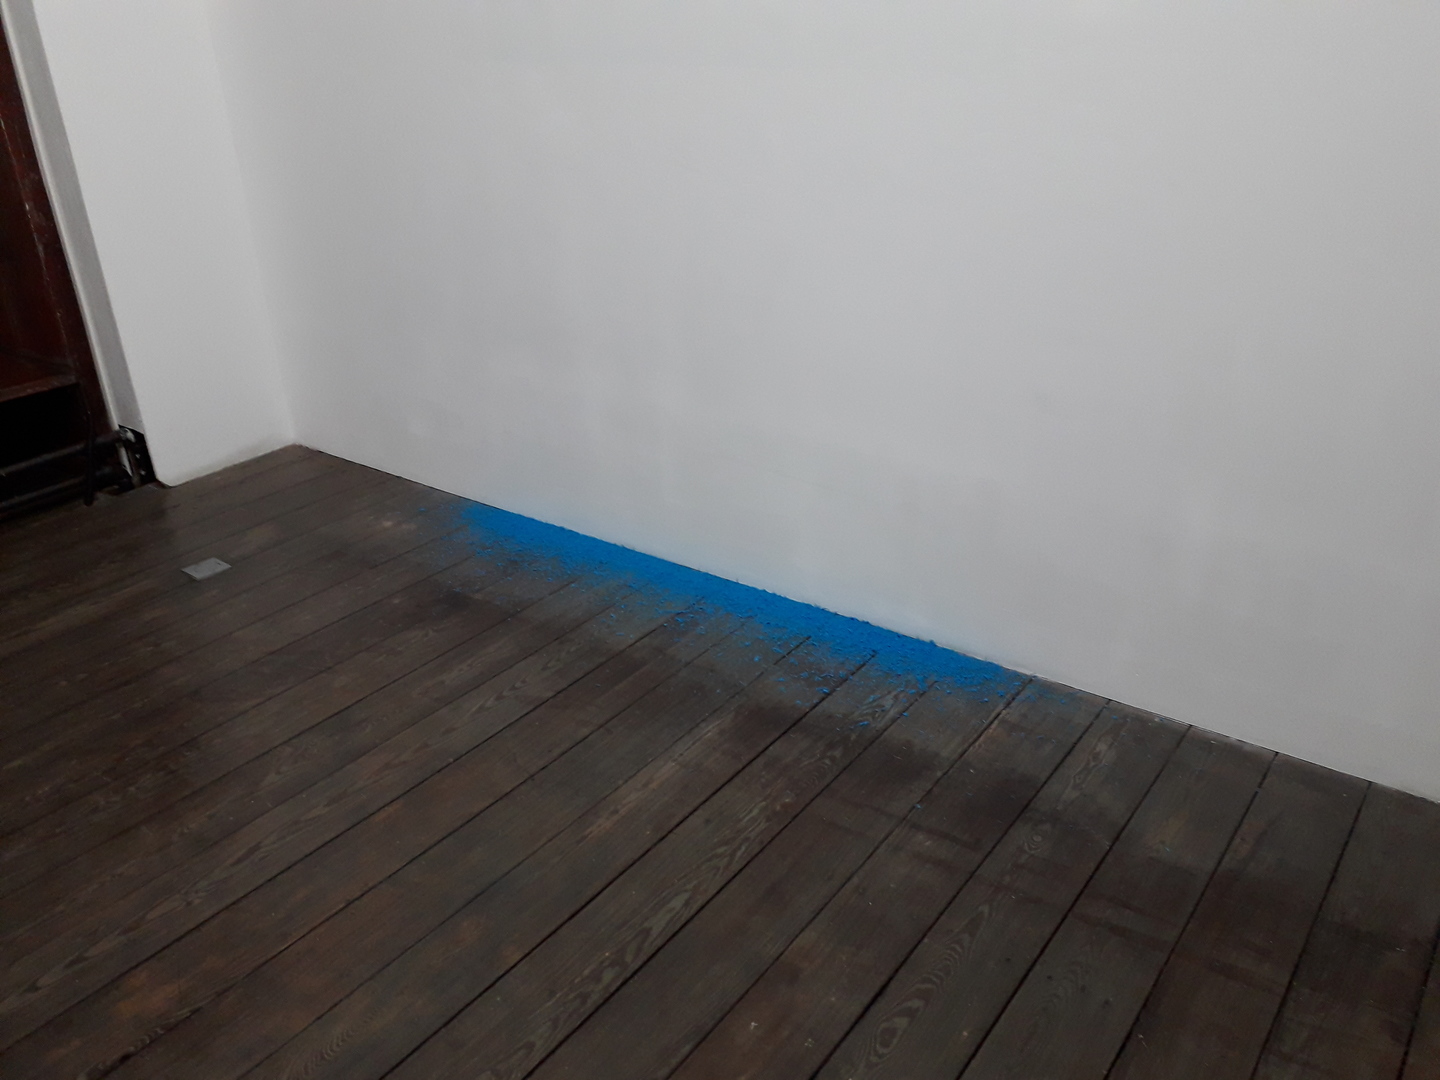 Poussière de craie bleue au sol au pied d'un mur